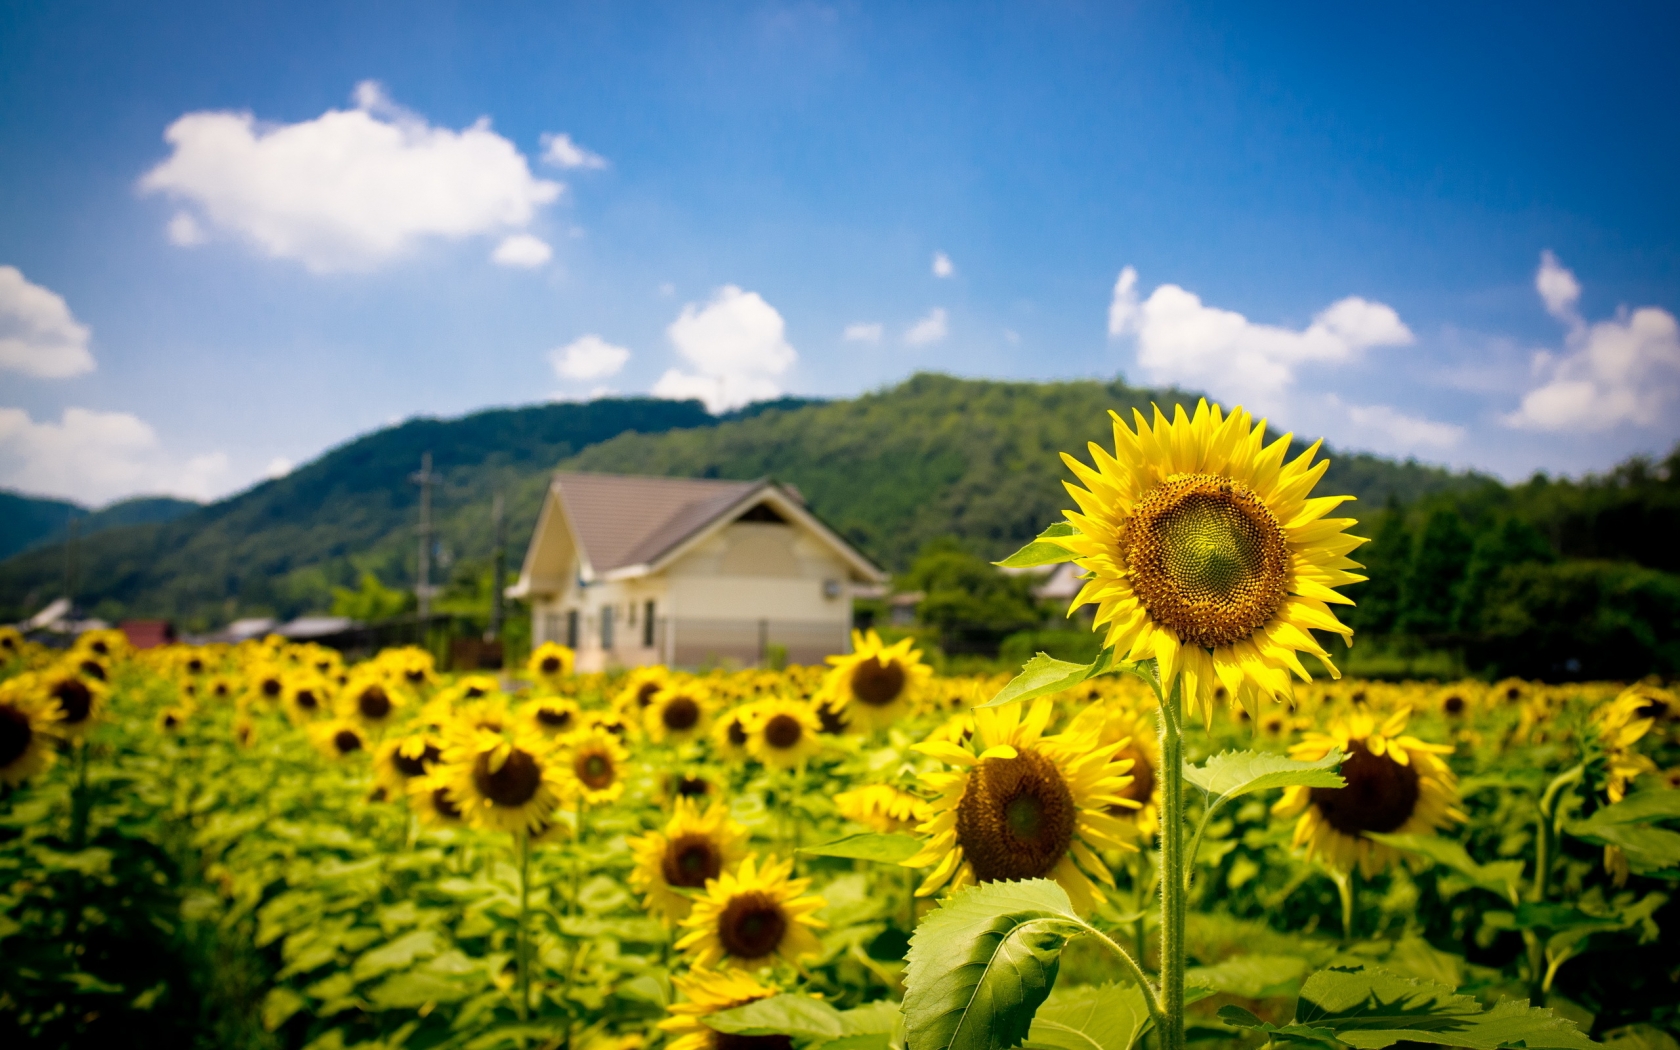 Sunflower Land for 1680 x 1050 widescreen resolution